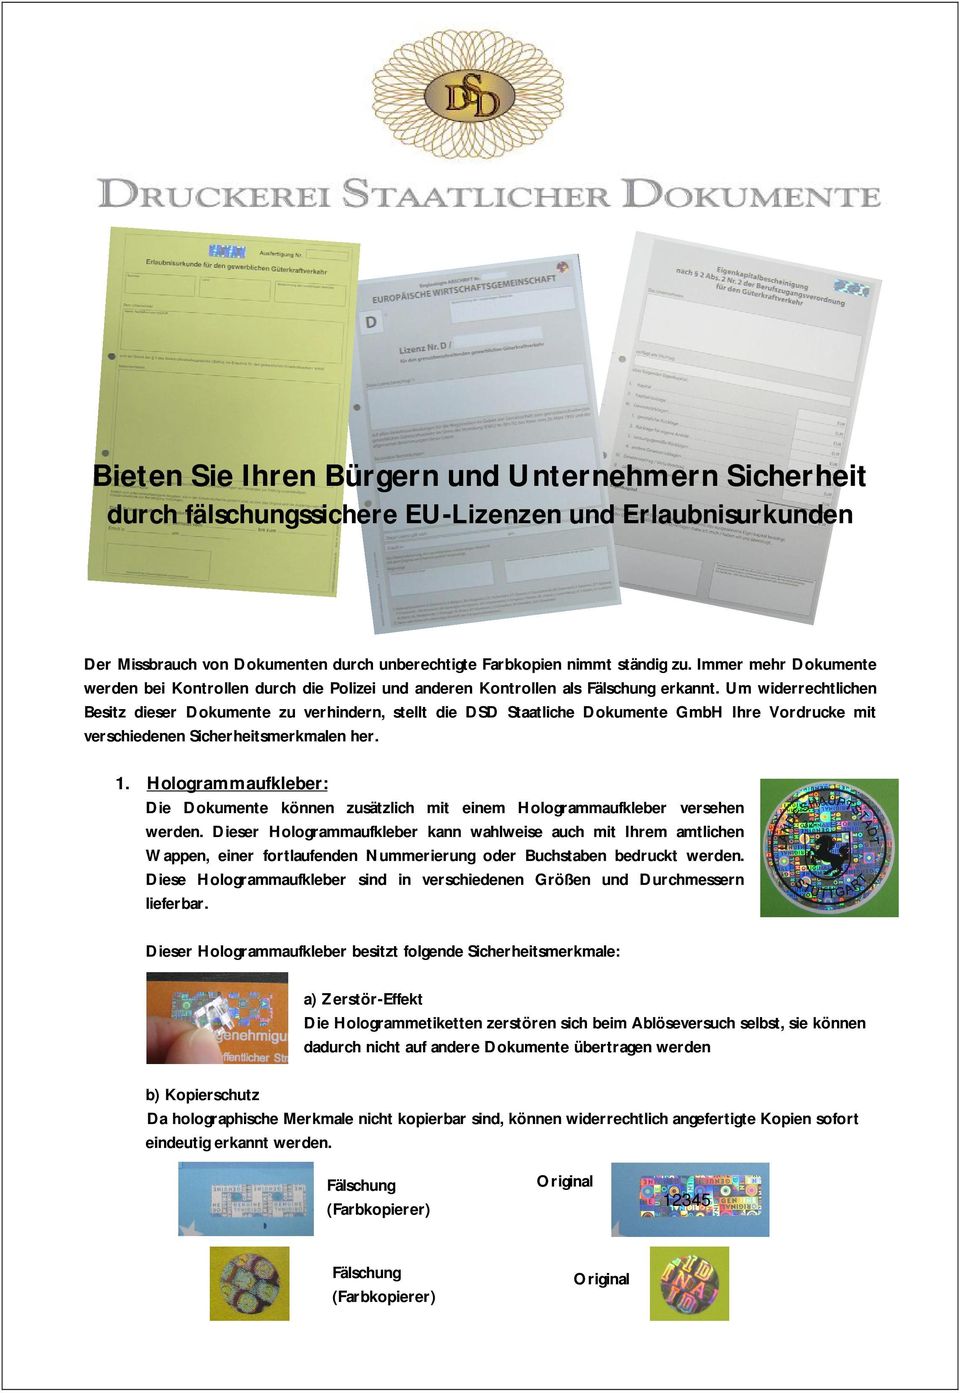 Um widerrechtlichen Besitz dieser Dokumente zu verhindern, stellt die DSD Staatliche Dokumente GmbH Ihre Vordrucke mit verschiedenen Sicherheitsmerkmalen her. 1.